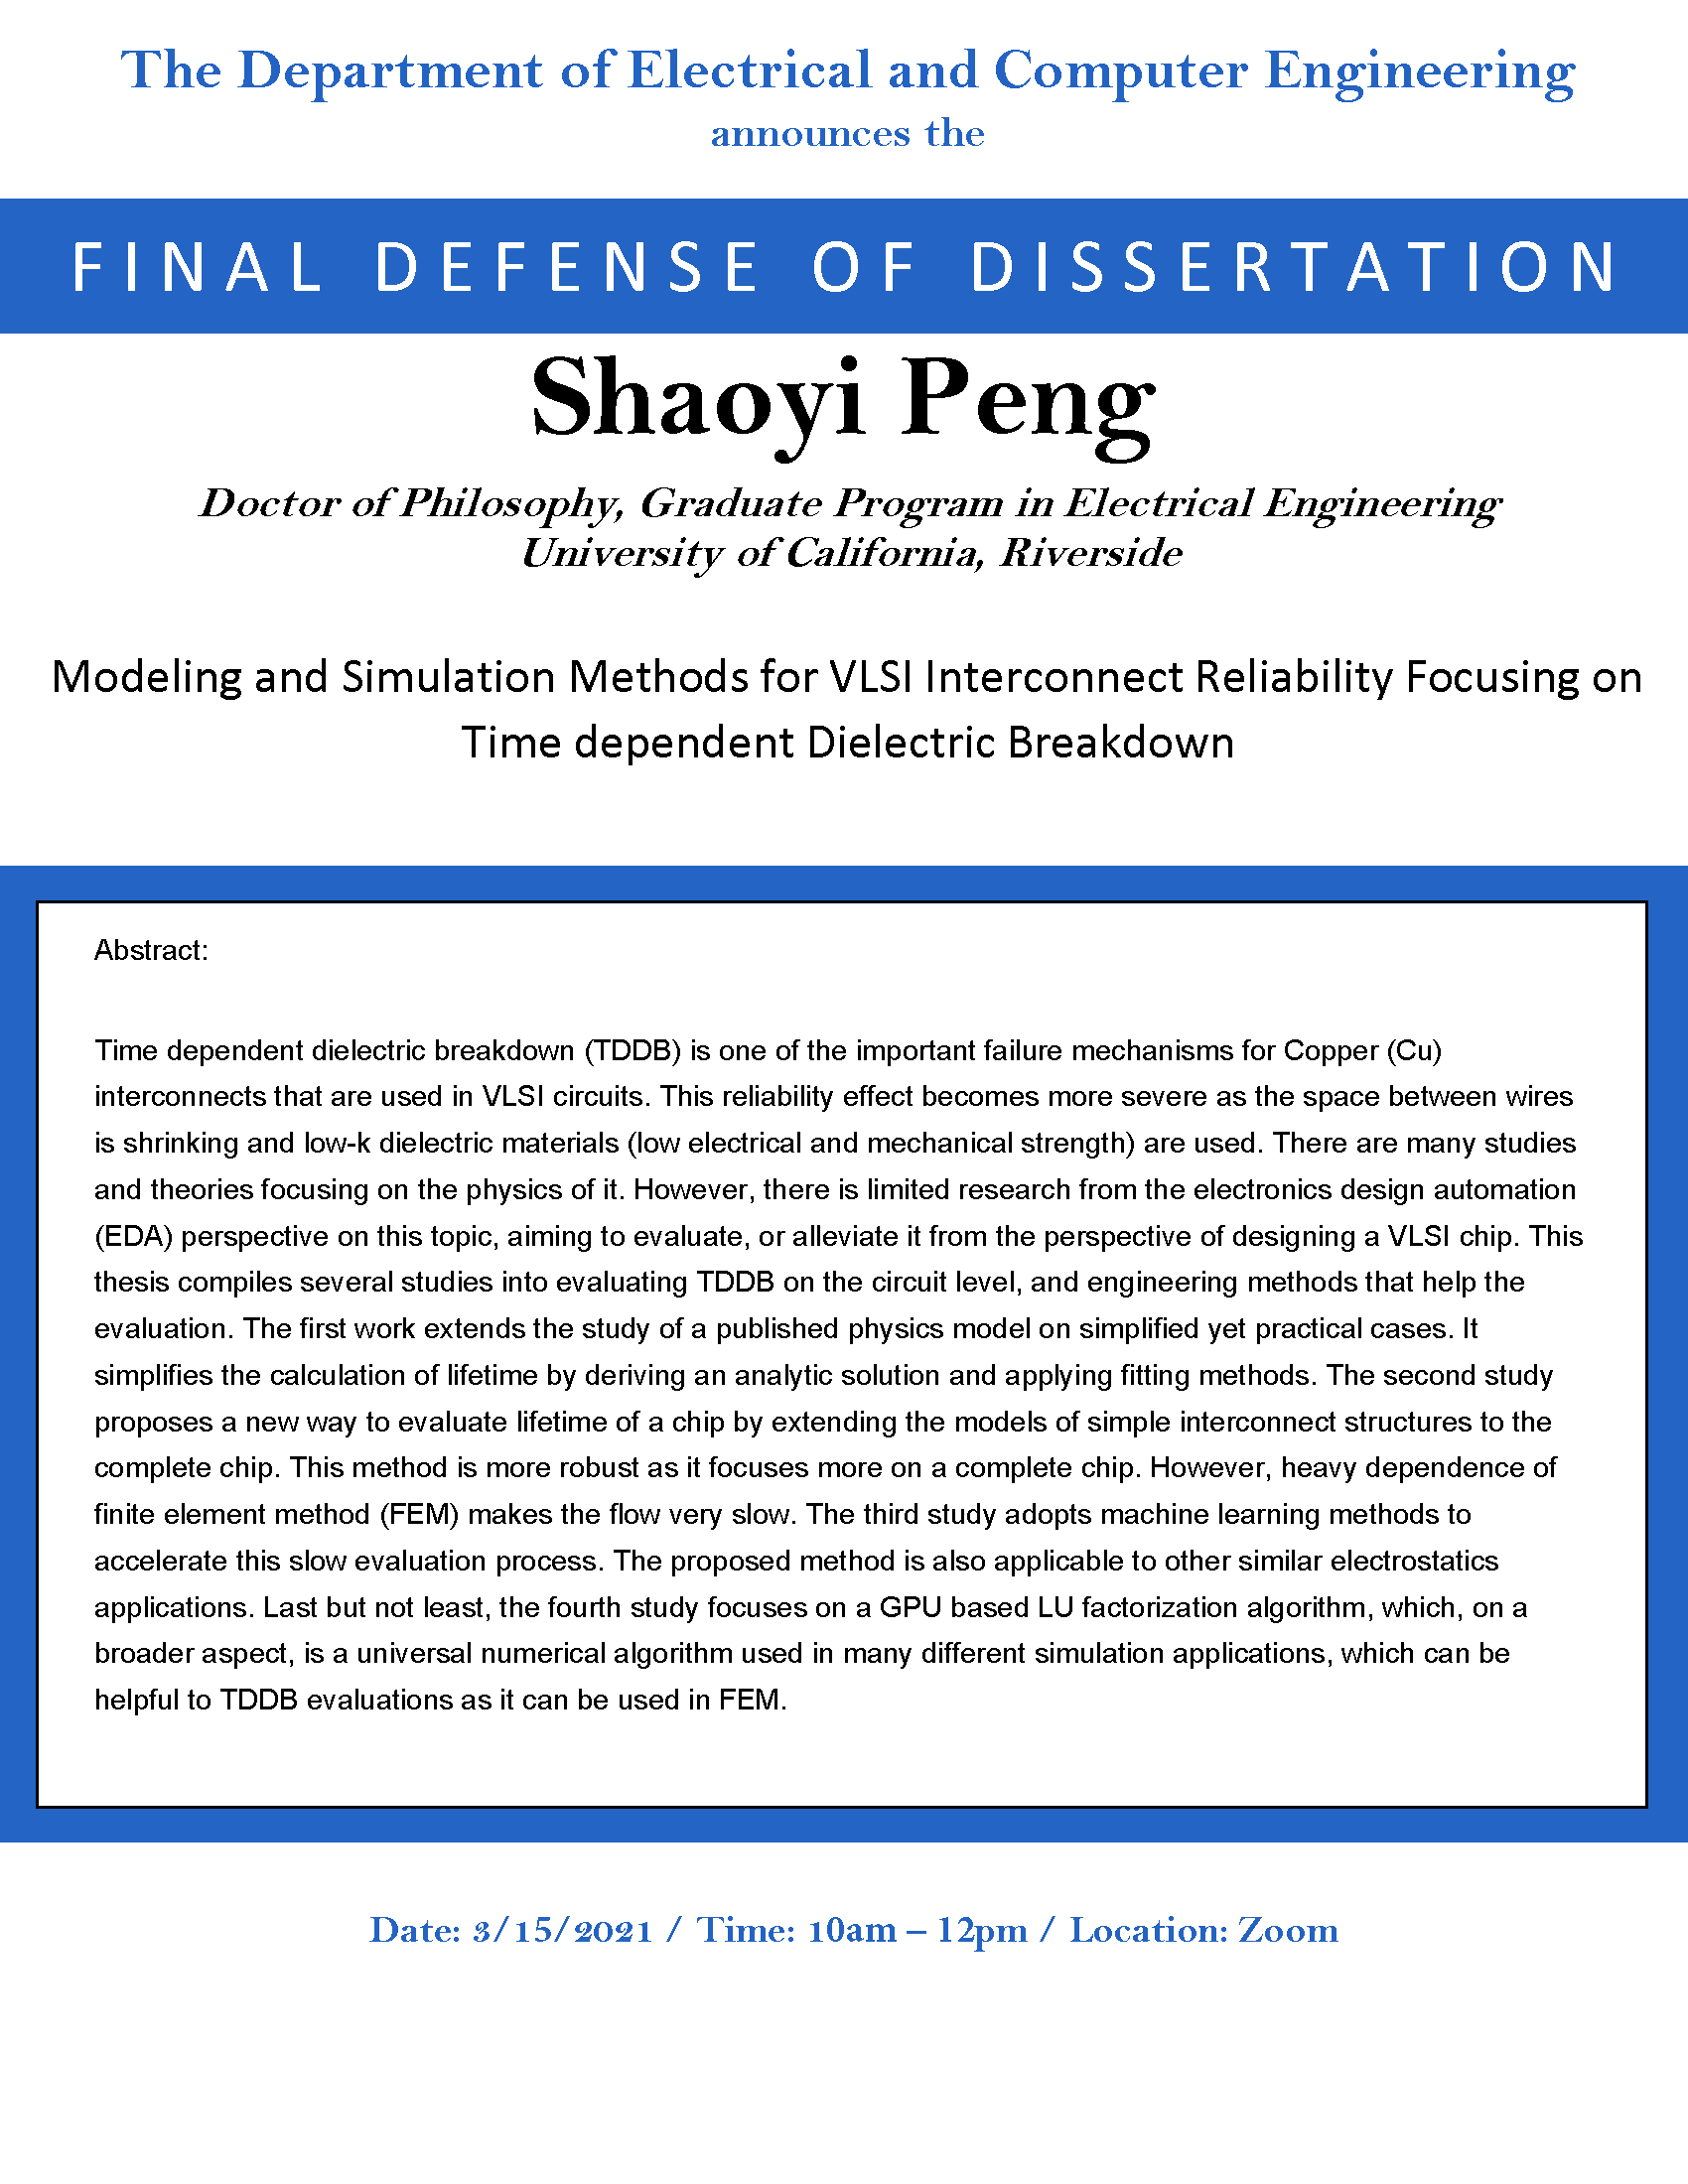 Final Defense of Dissertation: Shaoyi Peng